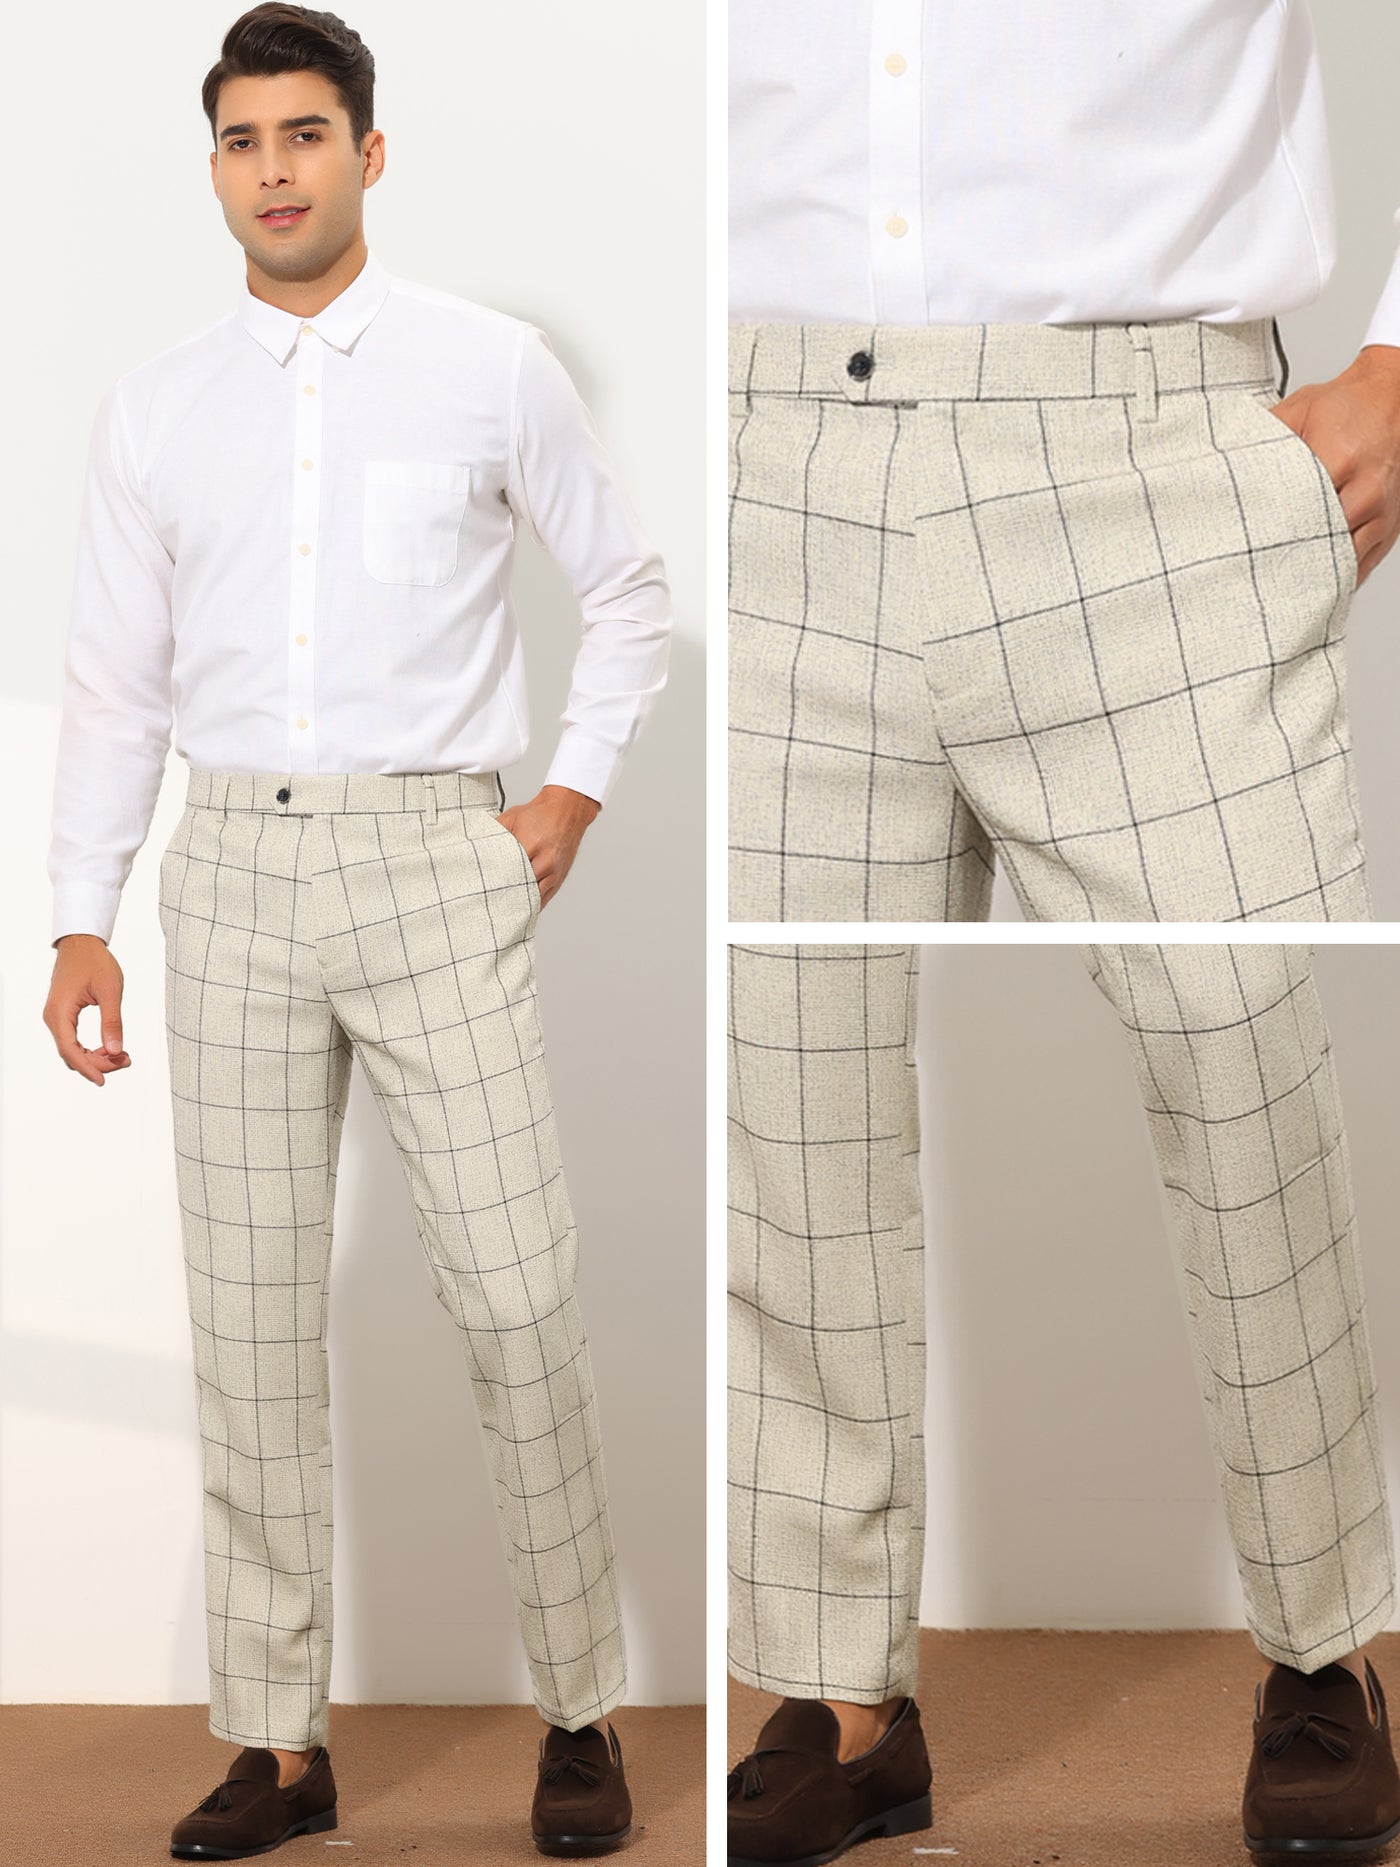 Bublédon Men's Formal Plaid Slim Fit Business Office Checked Suit Dress Pants